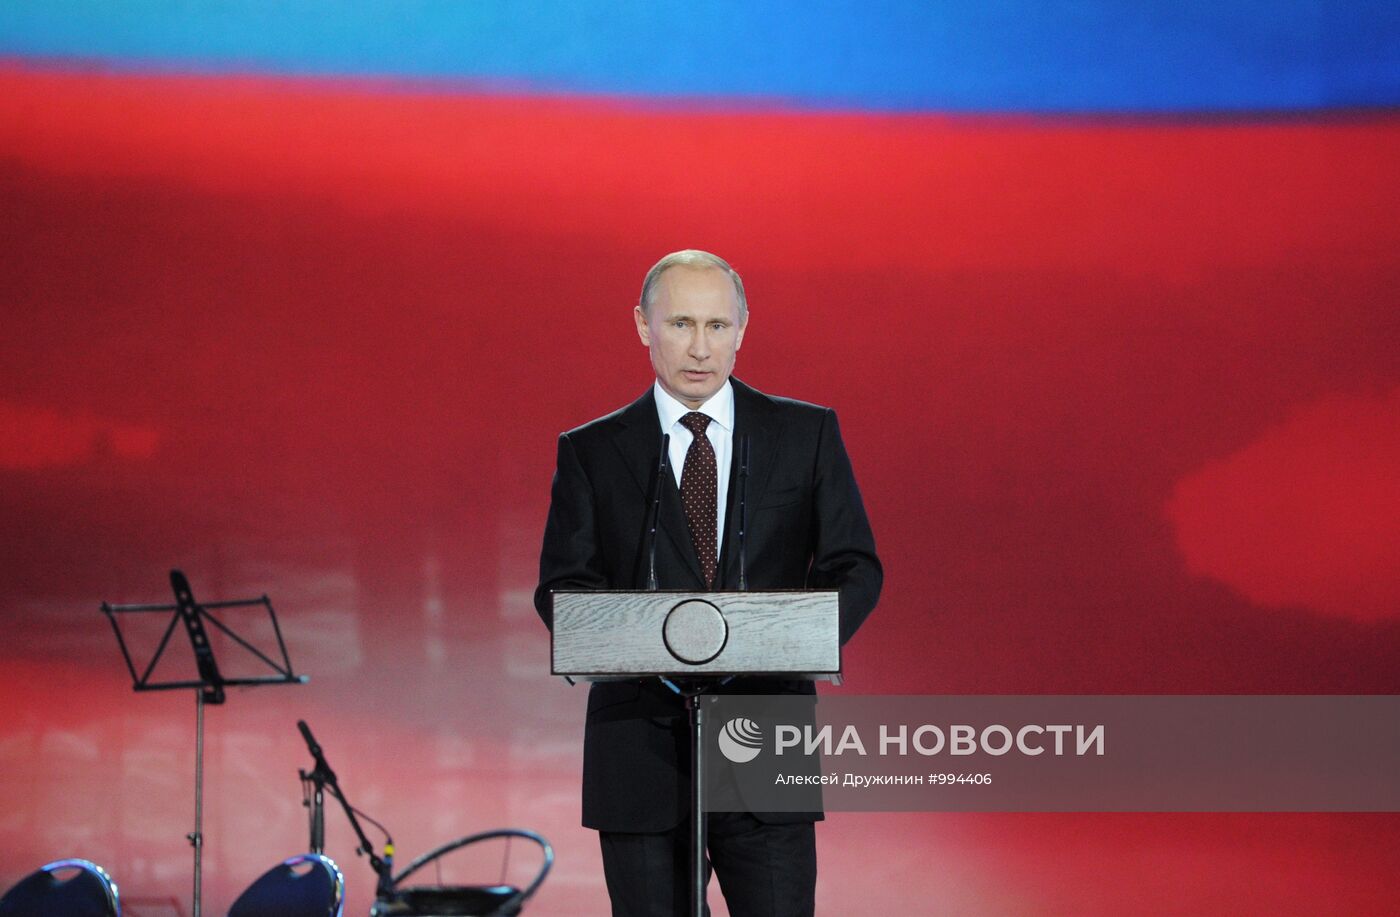 Владимир Путин на торжественном приеме в Москве